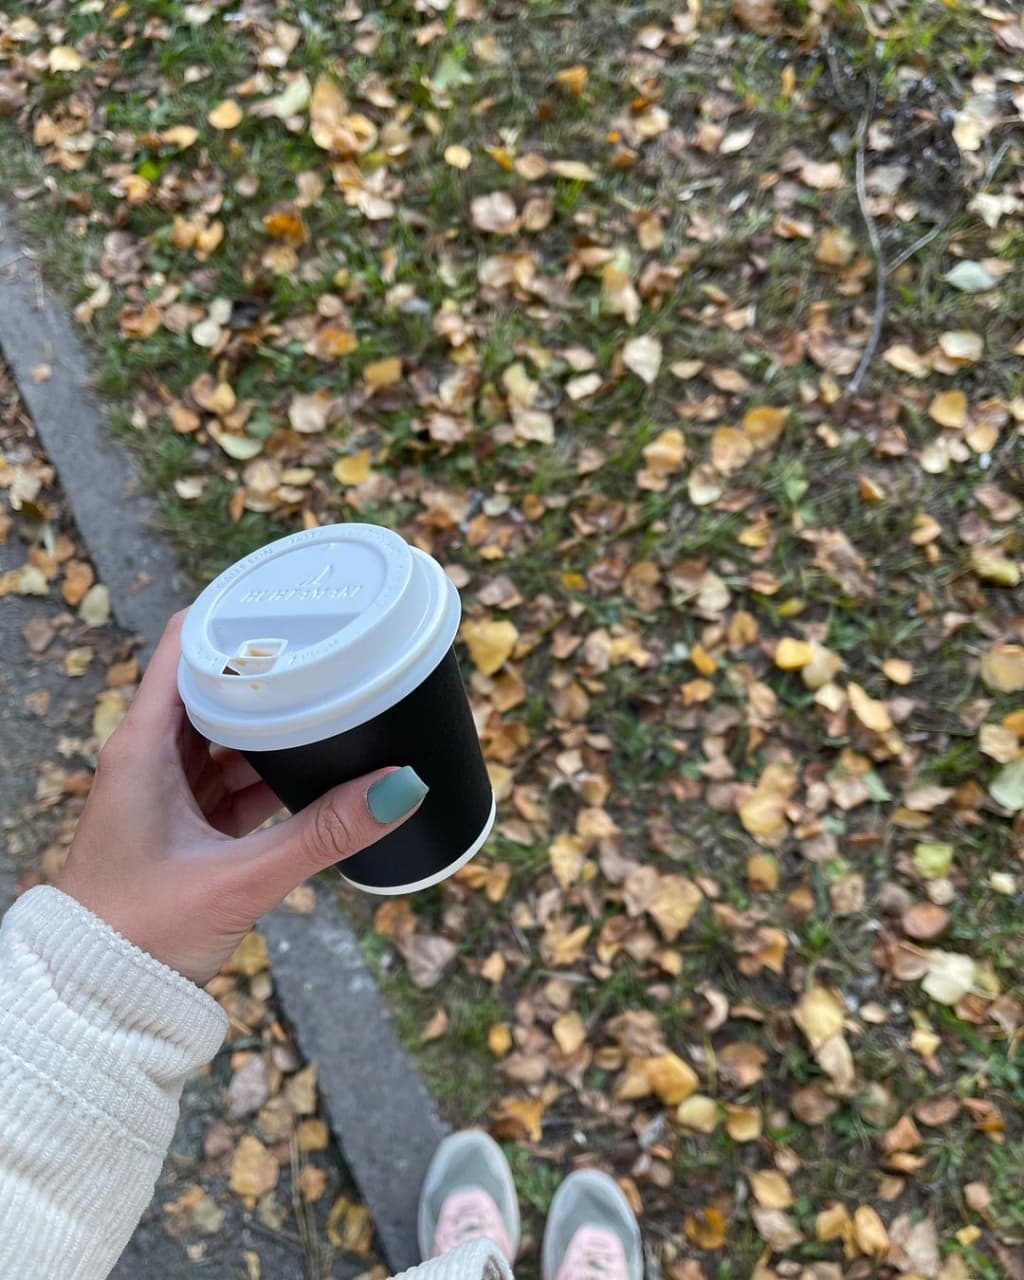 Горячий кофе — идеальное завершение осенней прогулки, не так ли?